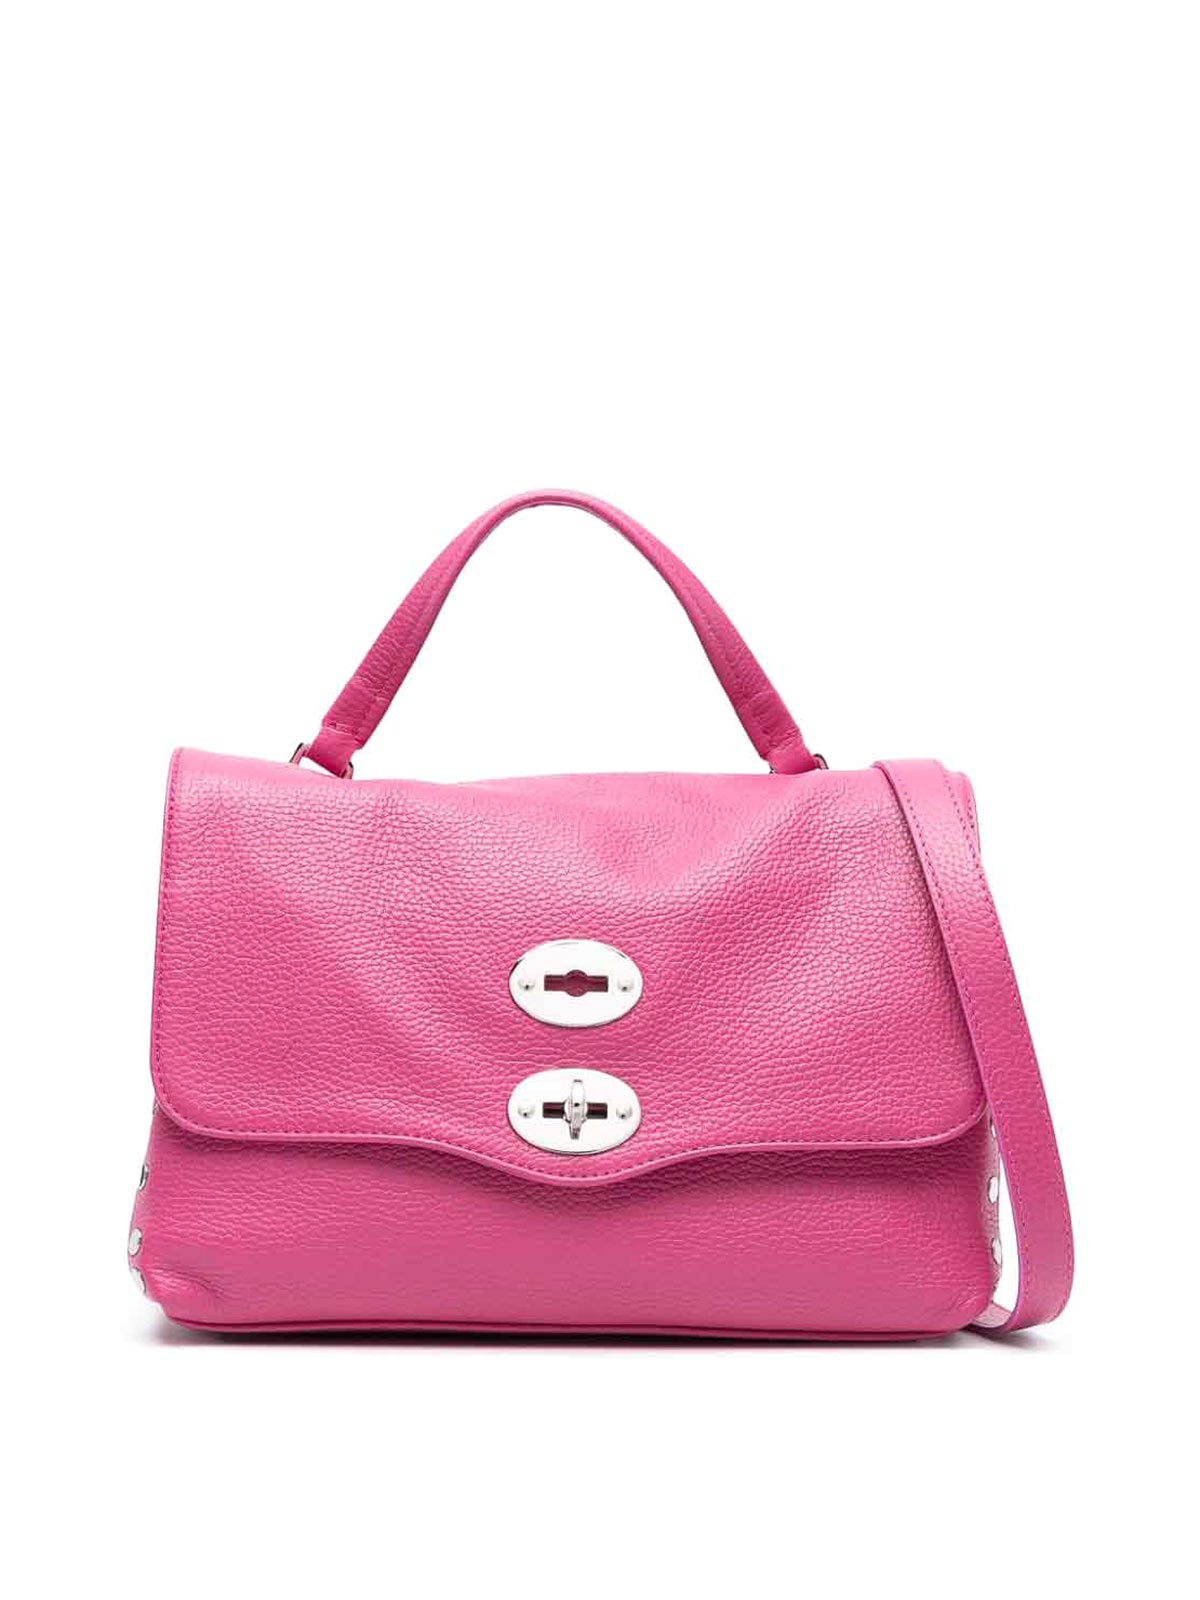 Zanellato Postina S Daily Leather Handbag In Colour Carne Y Neutral